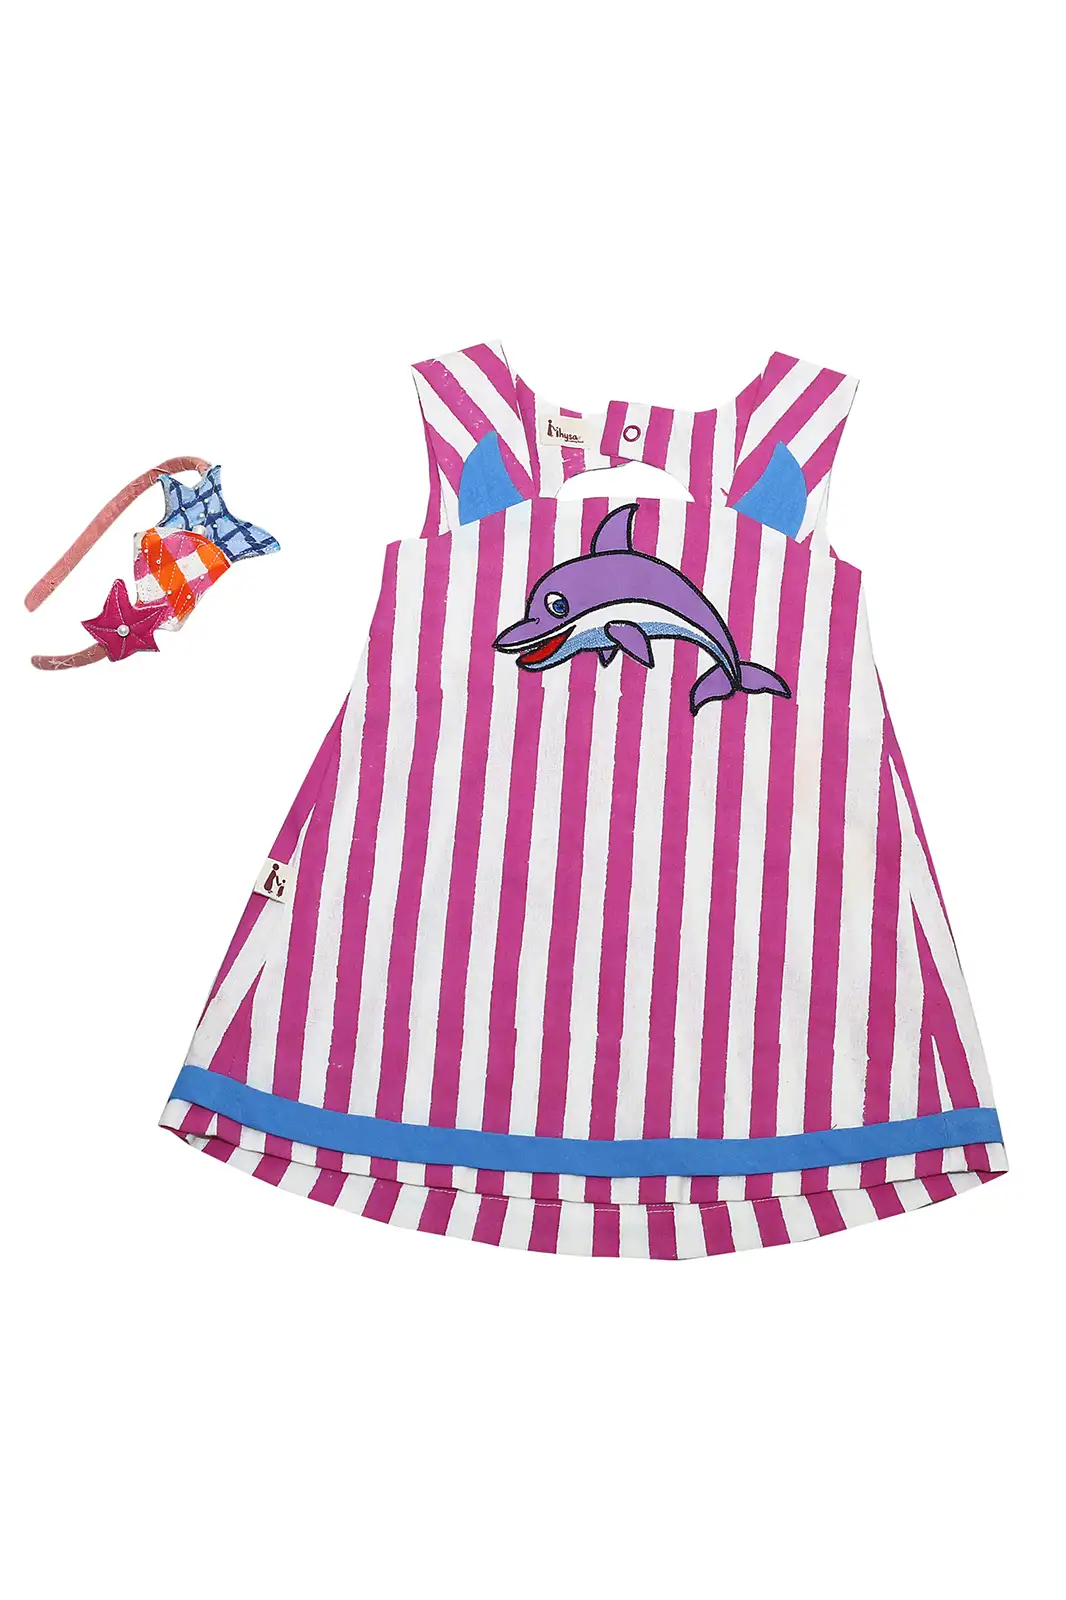 pinky fish patch work dress for girl, princess dresses for girls, christmas dresses for girls, party wear dress, color block dress, princess pink dress